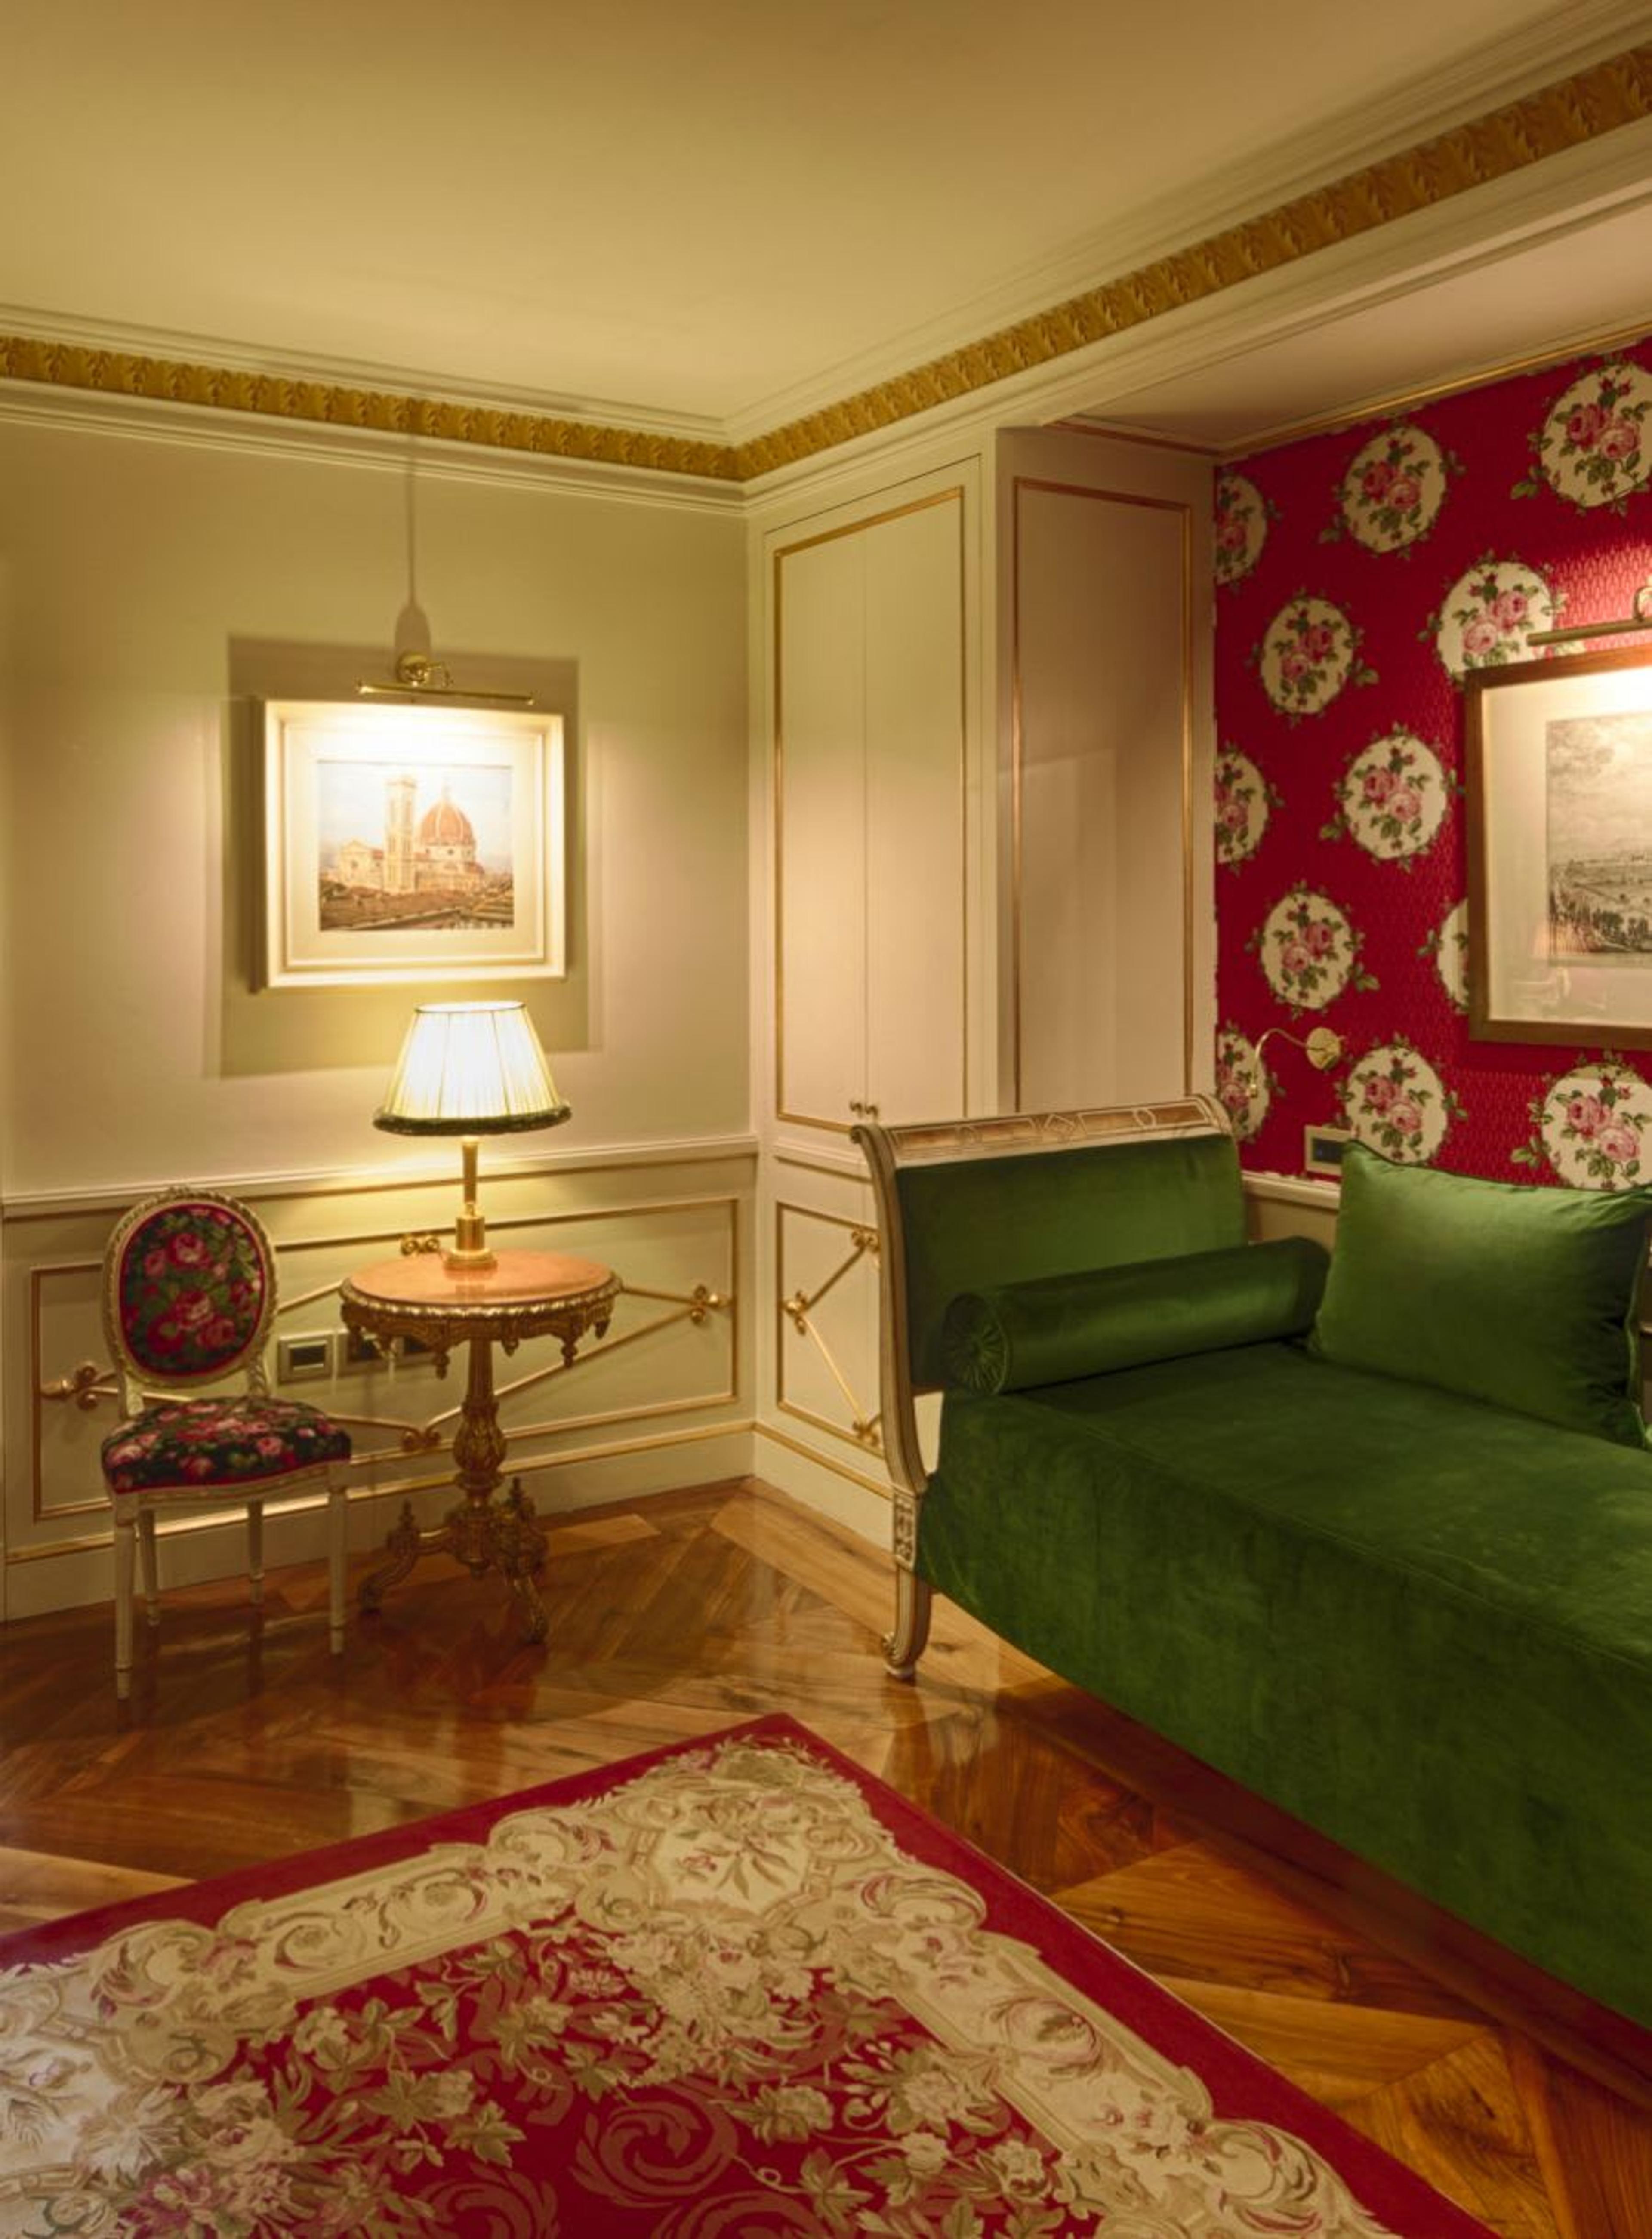 Details einer der Suiten der Villa Cora - Elegant eingerichtet mit Holzböden, antiken Möbeln und edlen Stoffen.